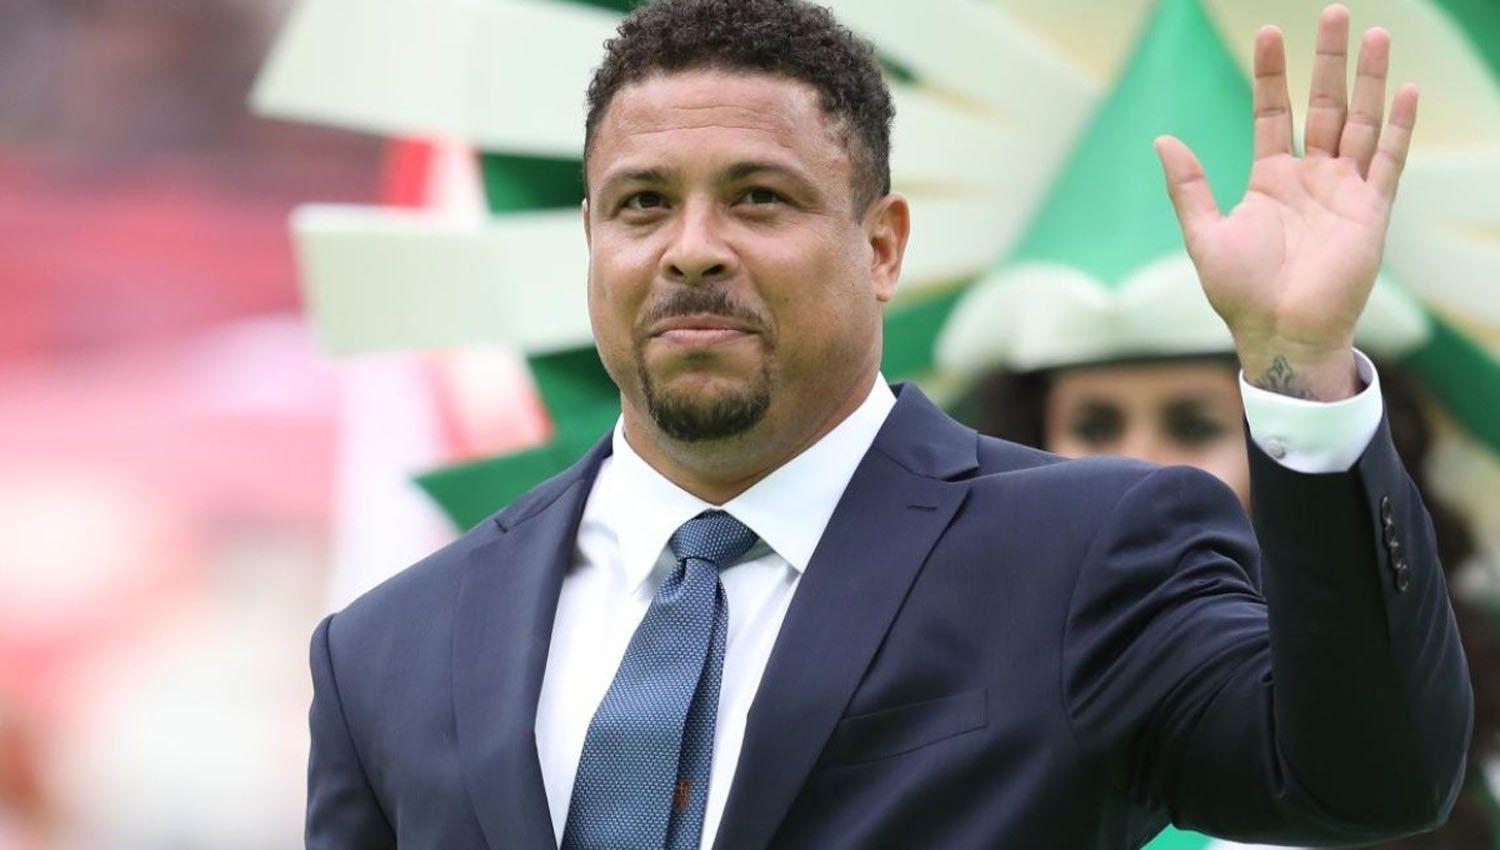 El ldquoFenoacutemenordquo Ronaldo comproacute el club Cruzeiro de Brasil con la promesa de retornarle su gloria